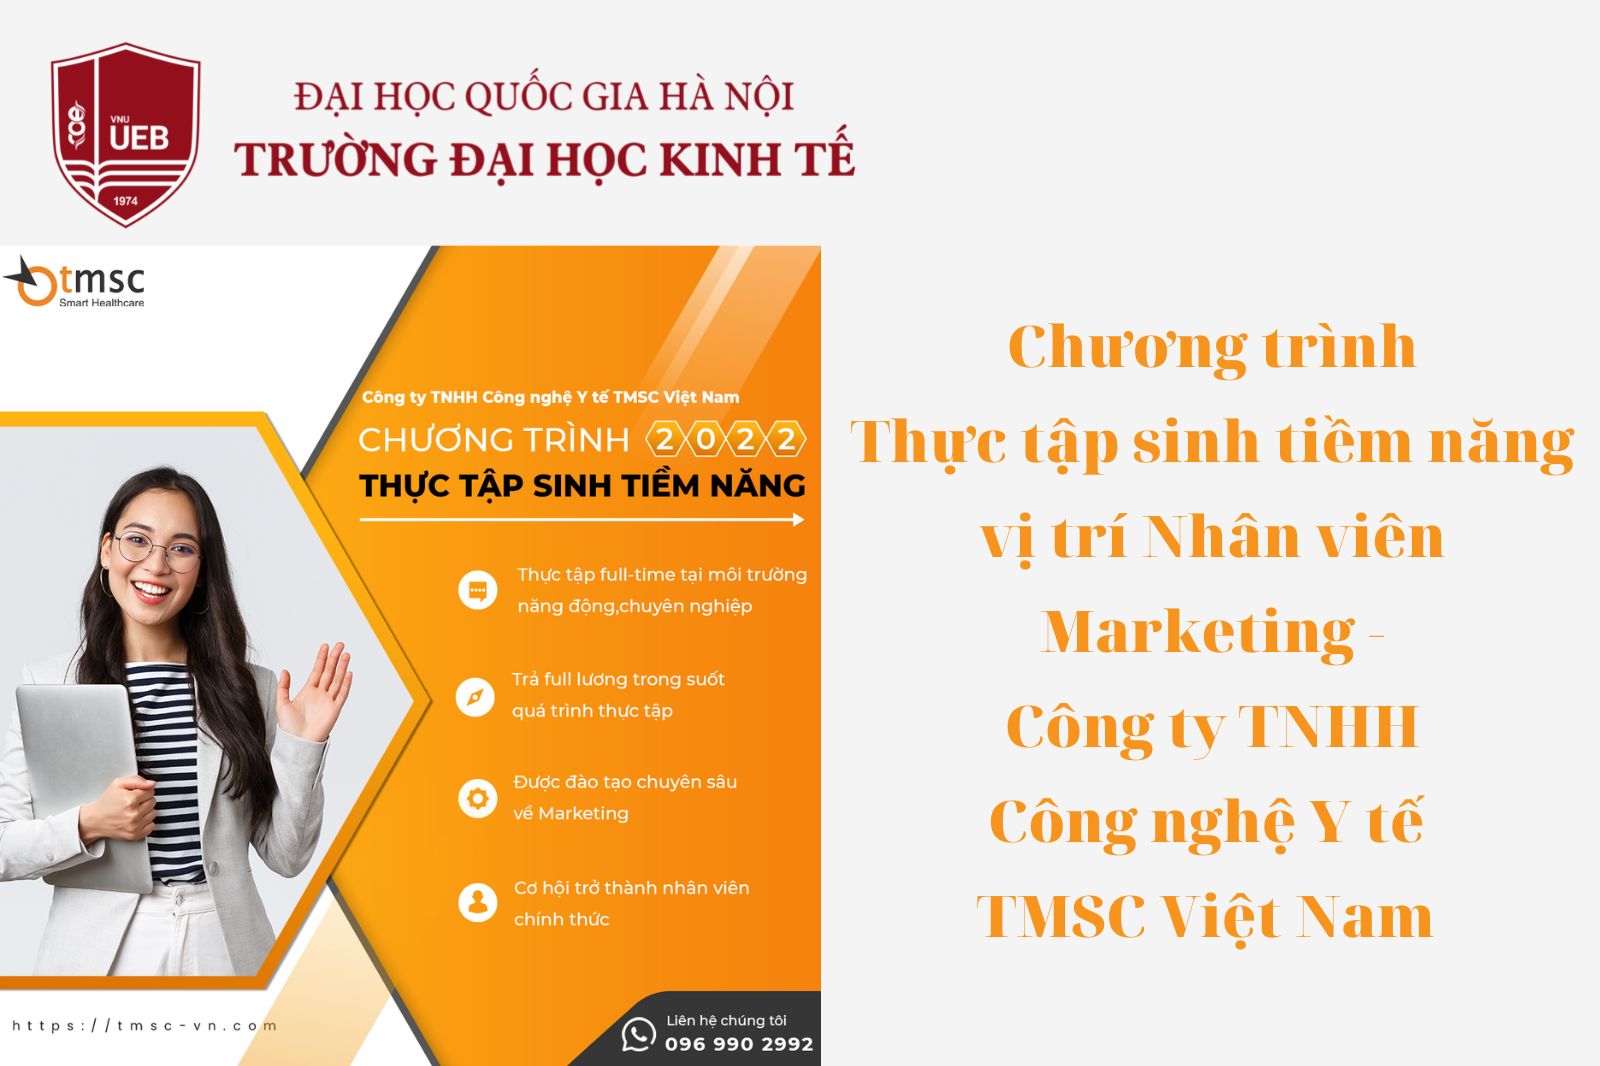 Chương trình "Thực tập sinh tiềm năng" tại Công ty TNHH Công nghệ Y tế TMSC Việt Nam 